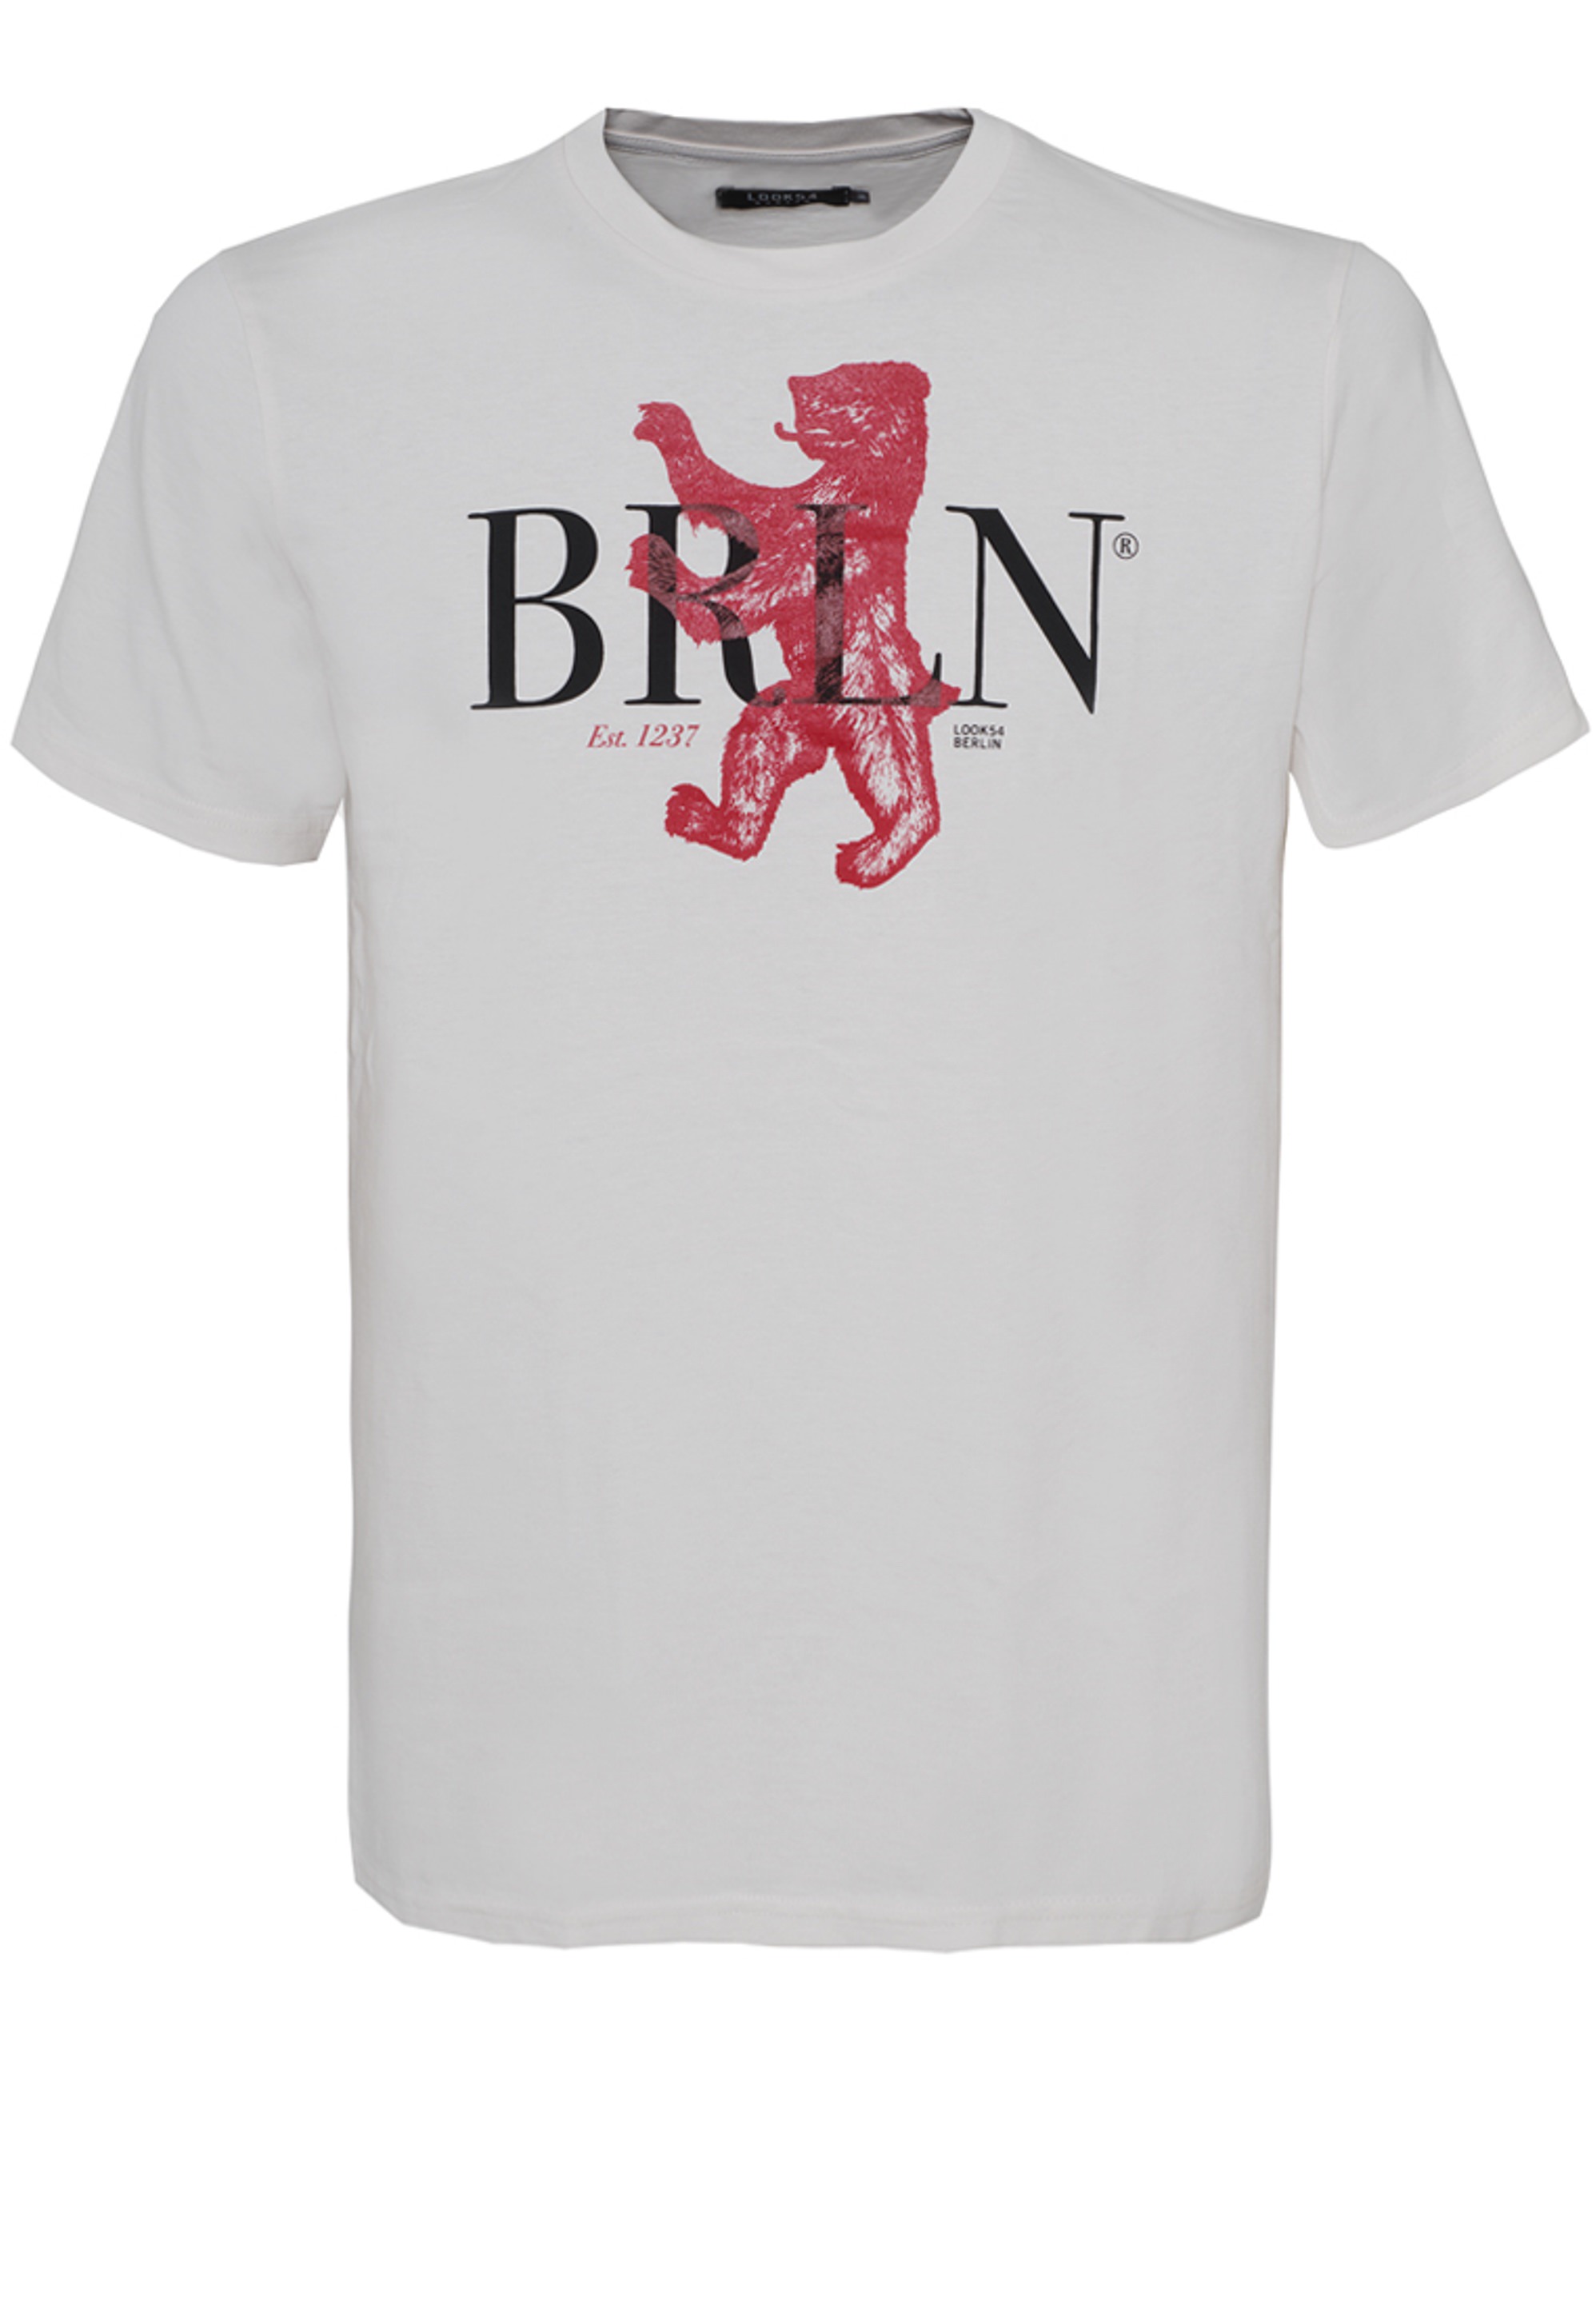 BRLN - The Bear - Unisex Shirt